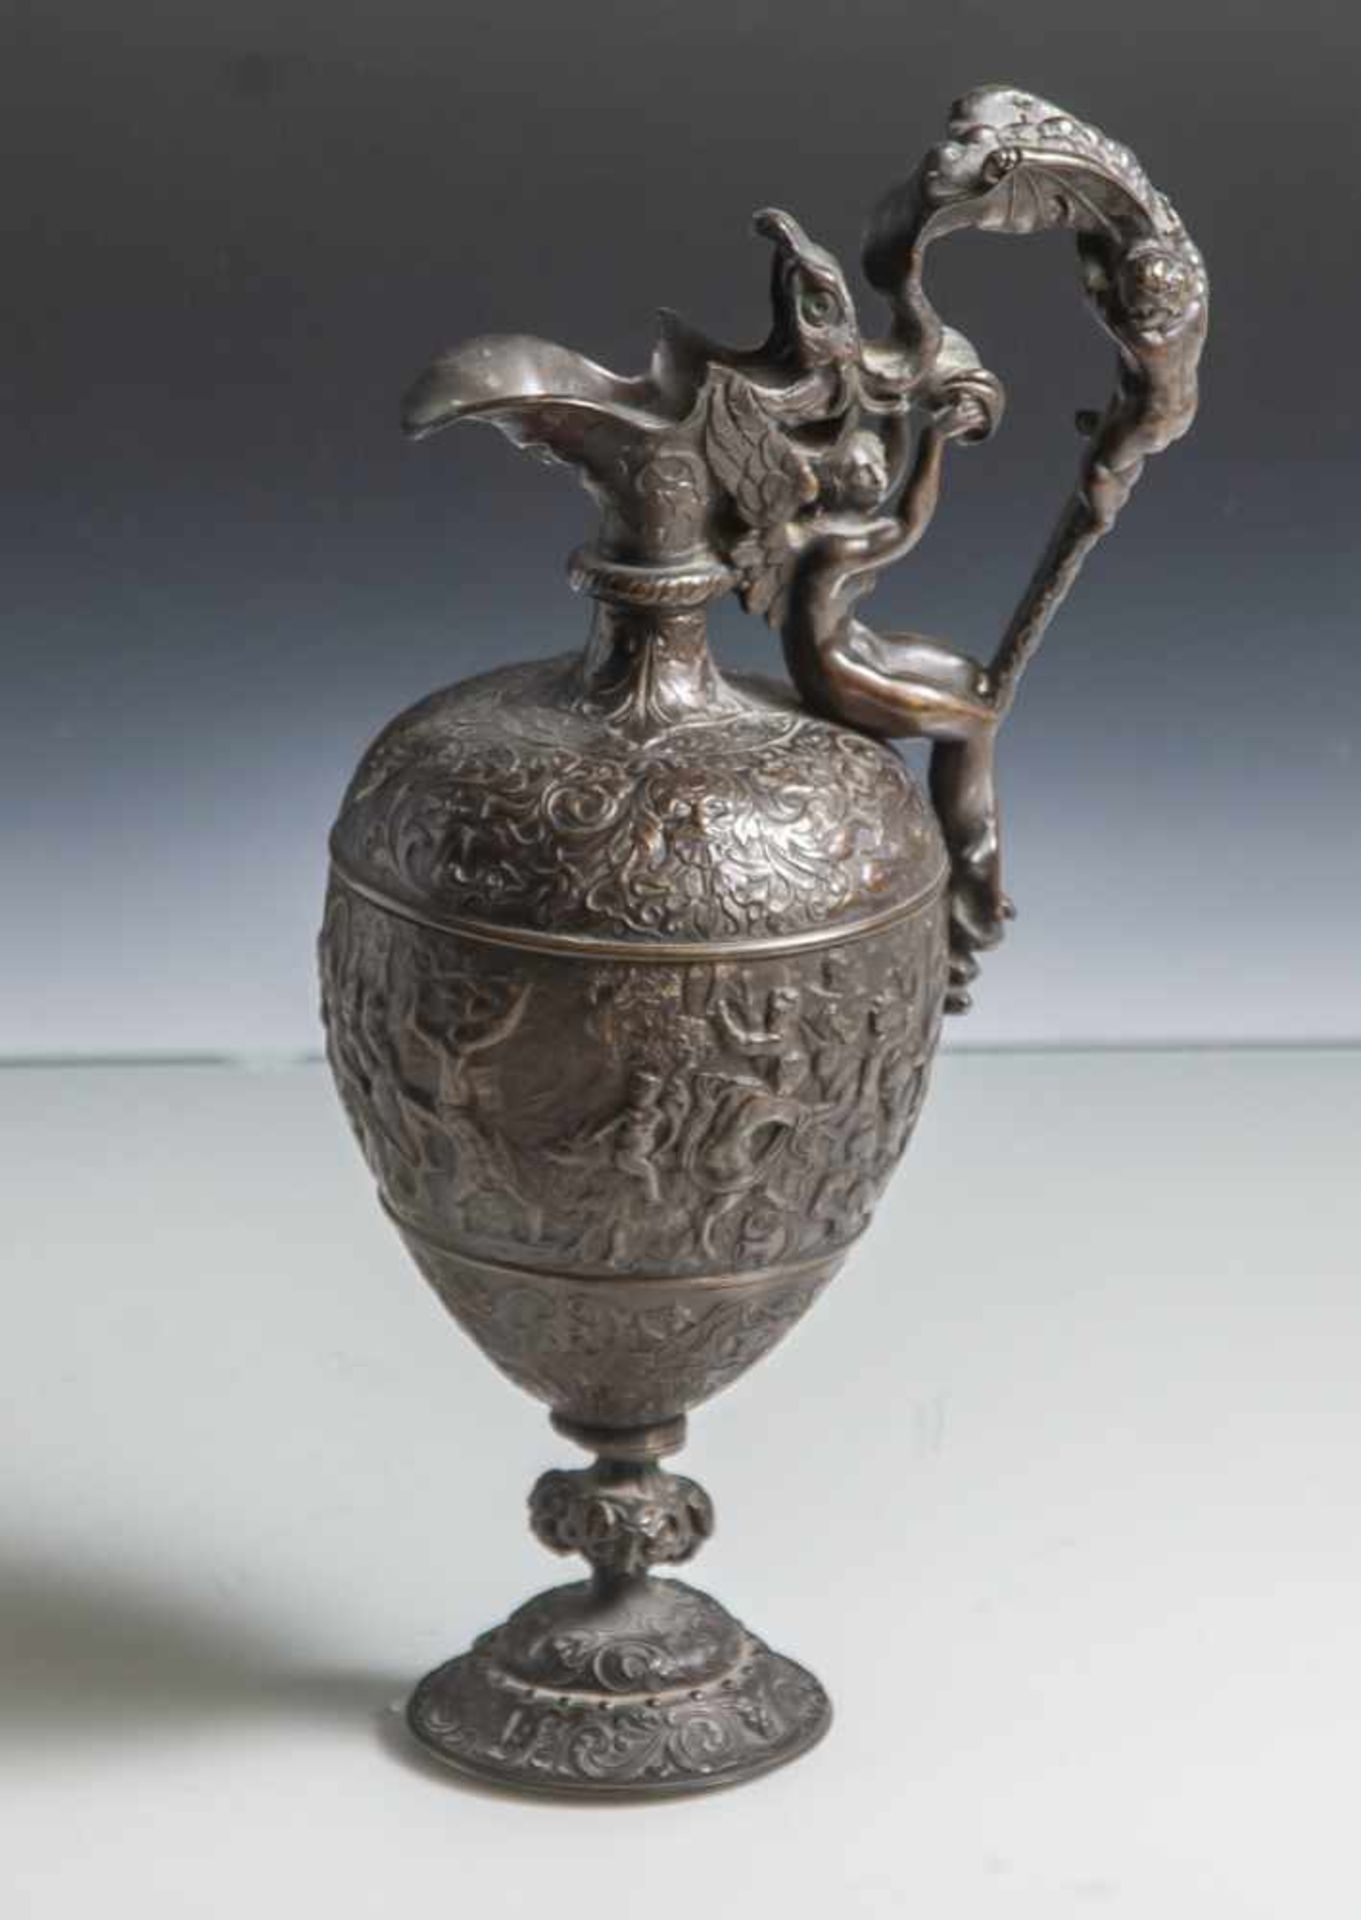 Bronzevase/ Beisteller, Historismus, ovoider Korpus, umlaufend mit Reliefdekor (Bacchanalesowie